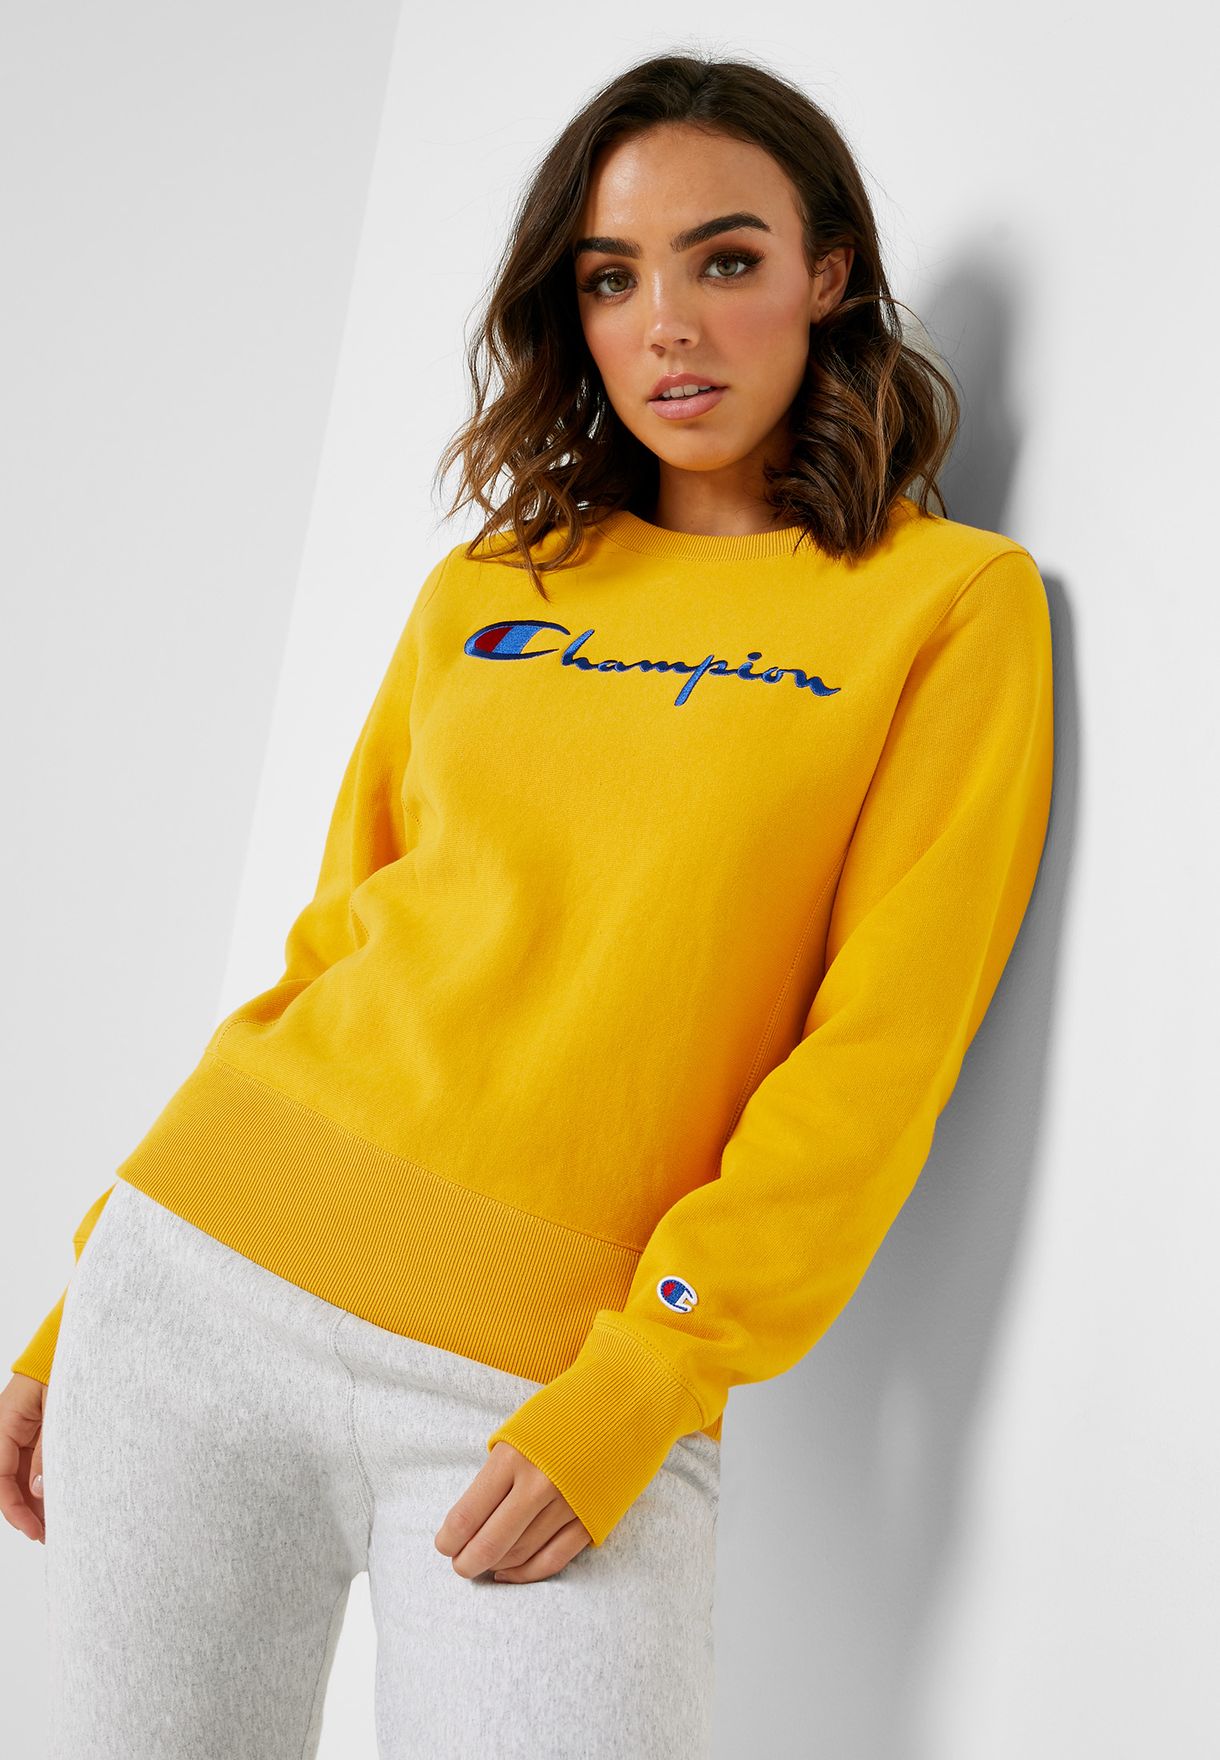 champion womens yellow sweatshirt